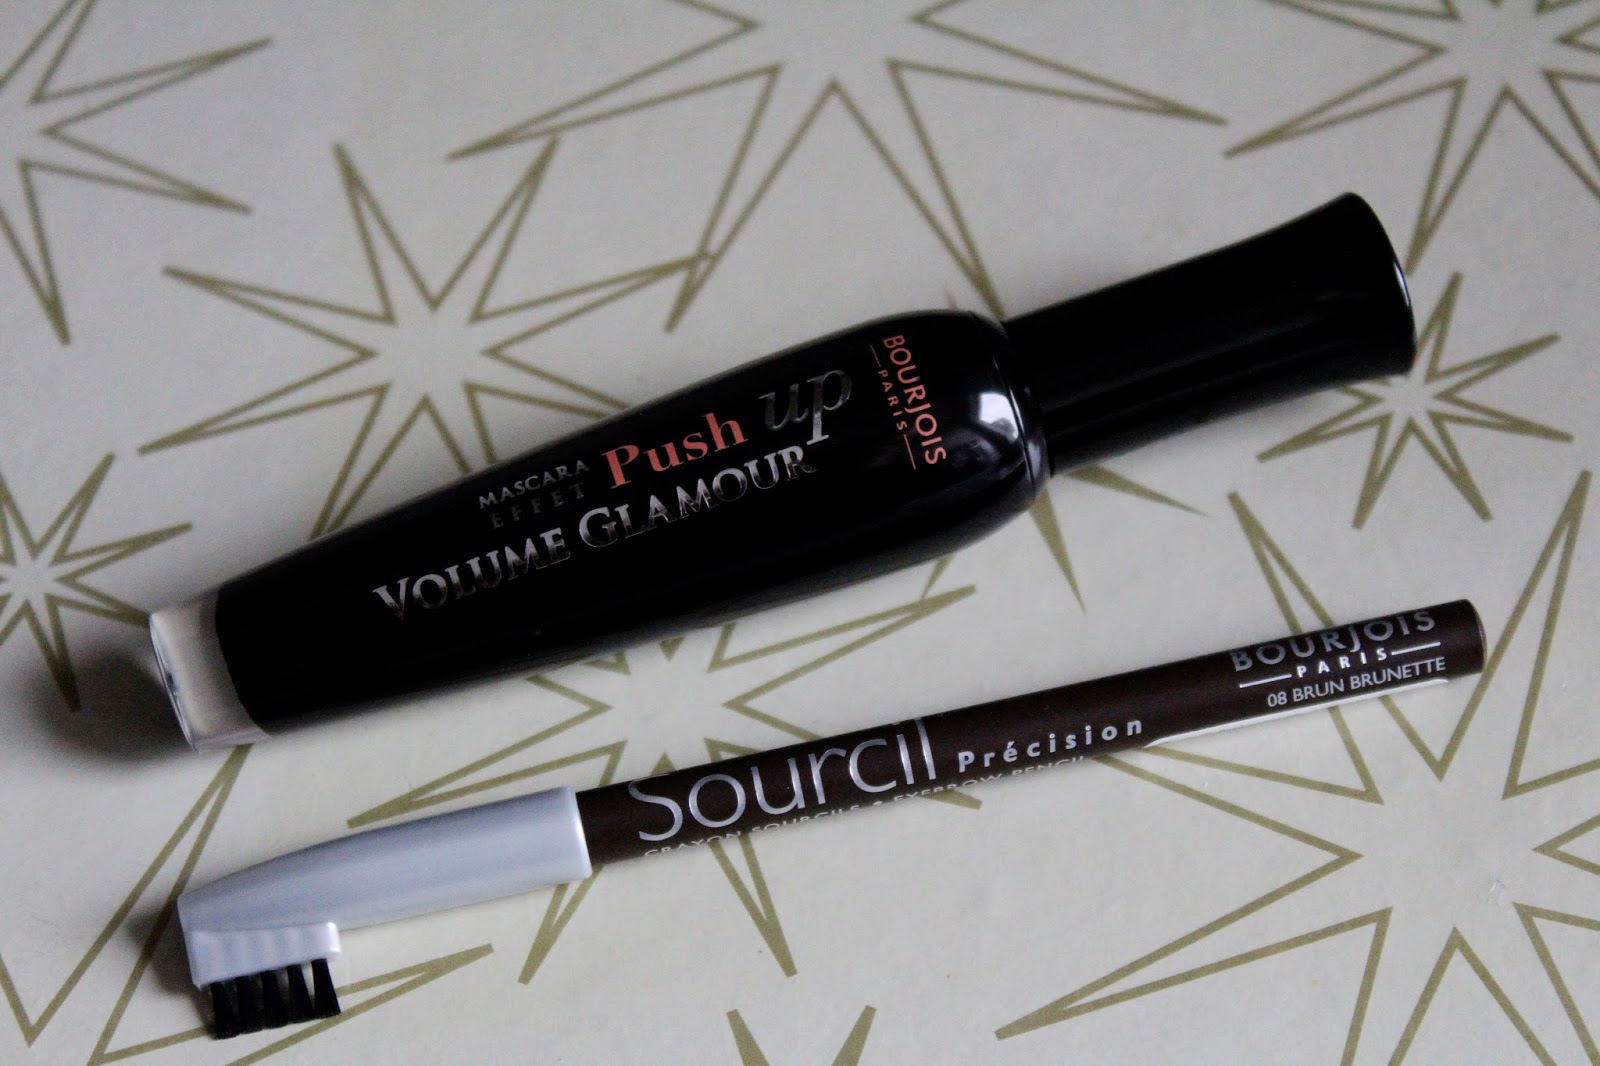 Bourjois Push Up Volume Glamour maskara i Sourcil Precision olovka za obrve